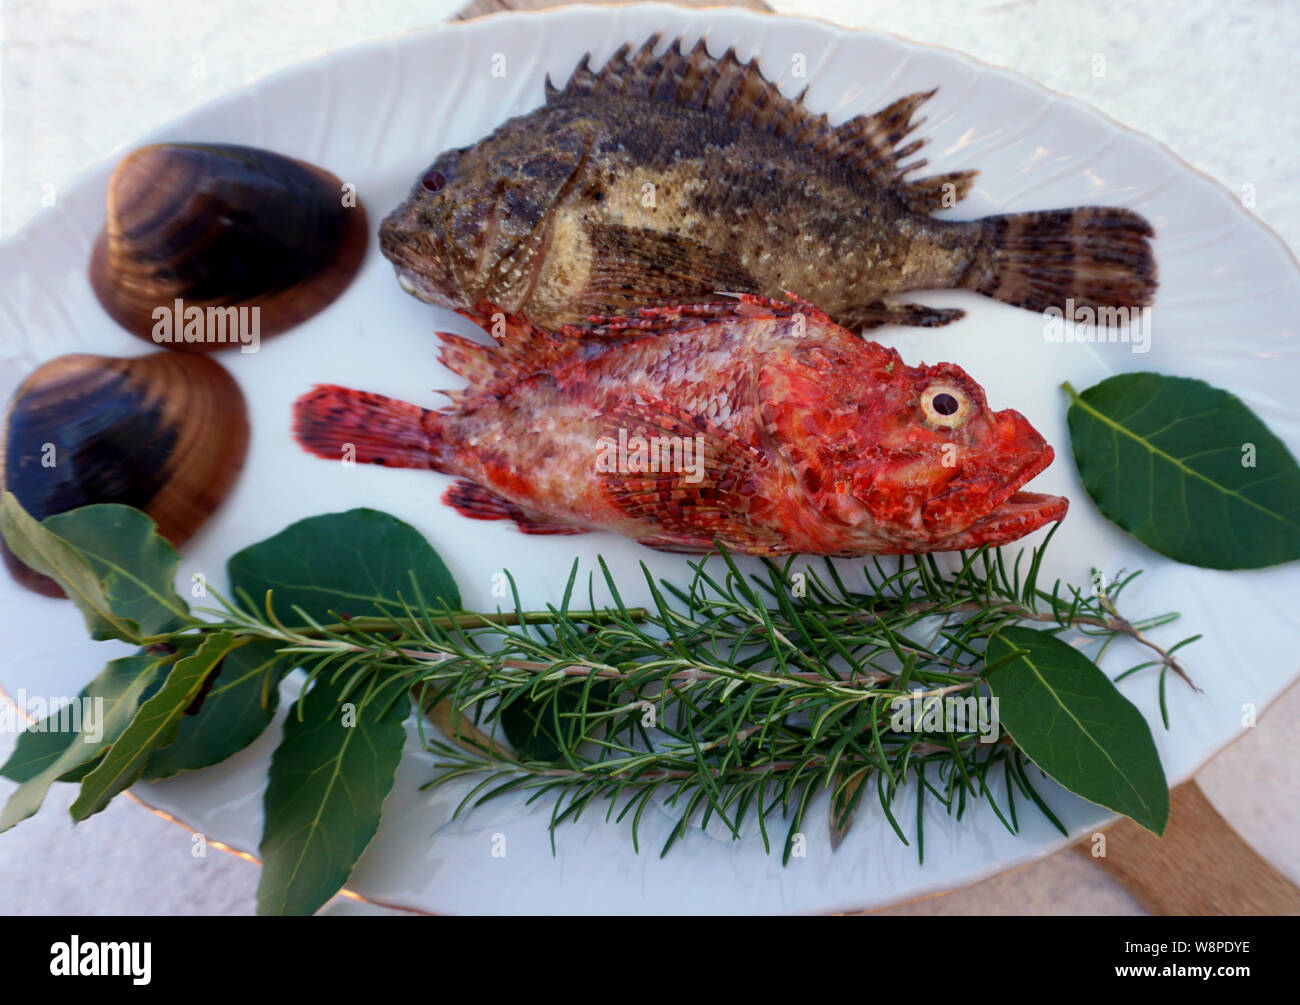 Meer Fisch, red fish Scorpaena scrofa und Skorpionfische Scorpaena porcus auf der Platte, mit natürlichen mediterranen Kräutern und Muscheln dekoriert Stockfoto